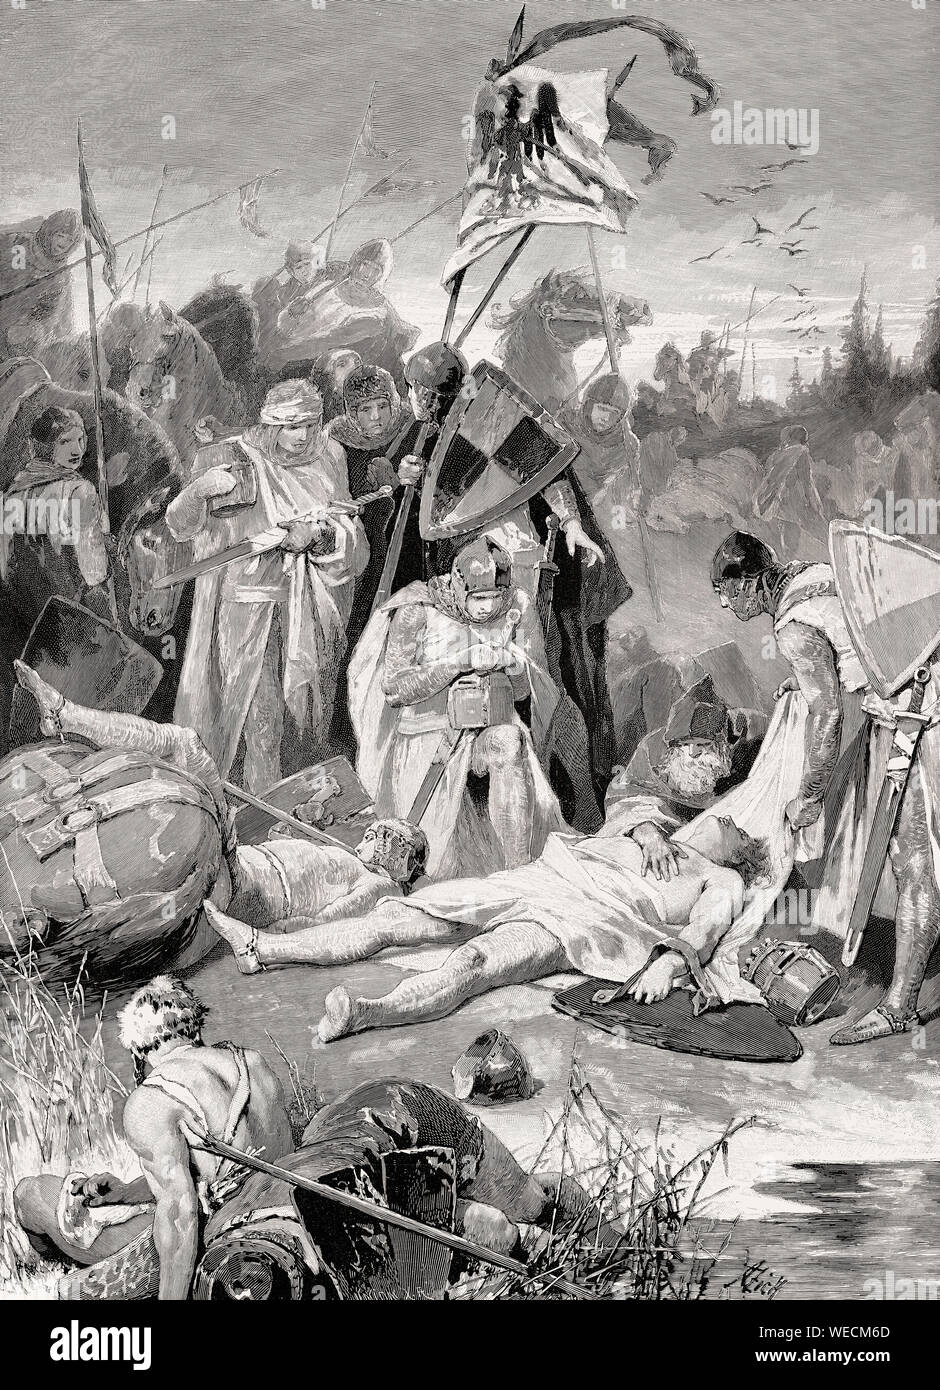 Rodolfo de Habsburgo en el cuerpo muerto del rey Ottokar de Bohemia, en la batalla de Marchfeld, 26 de agosto de 1278 Foto de stock